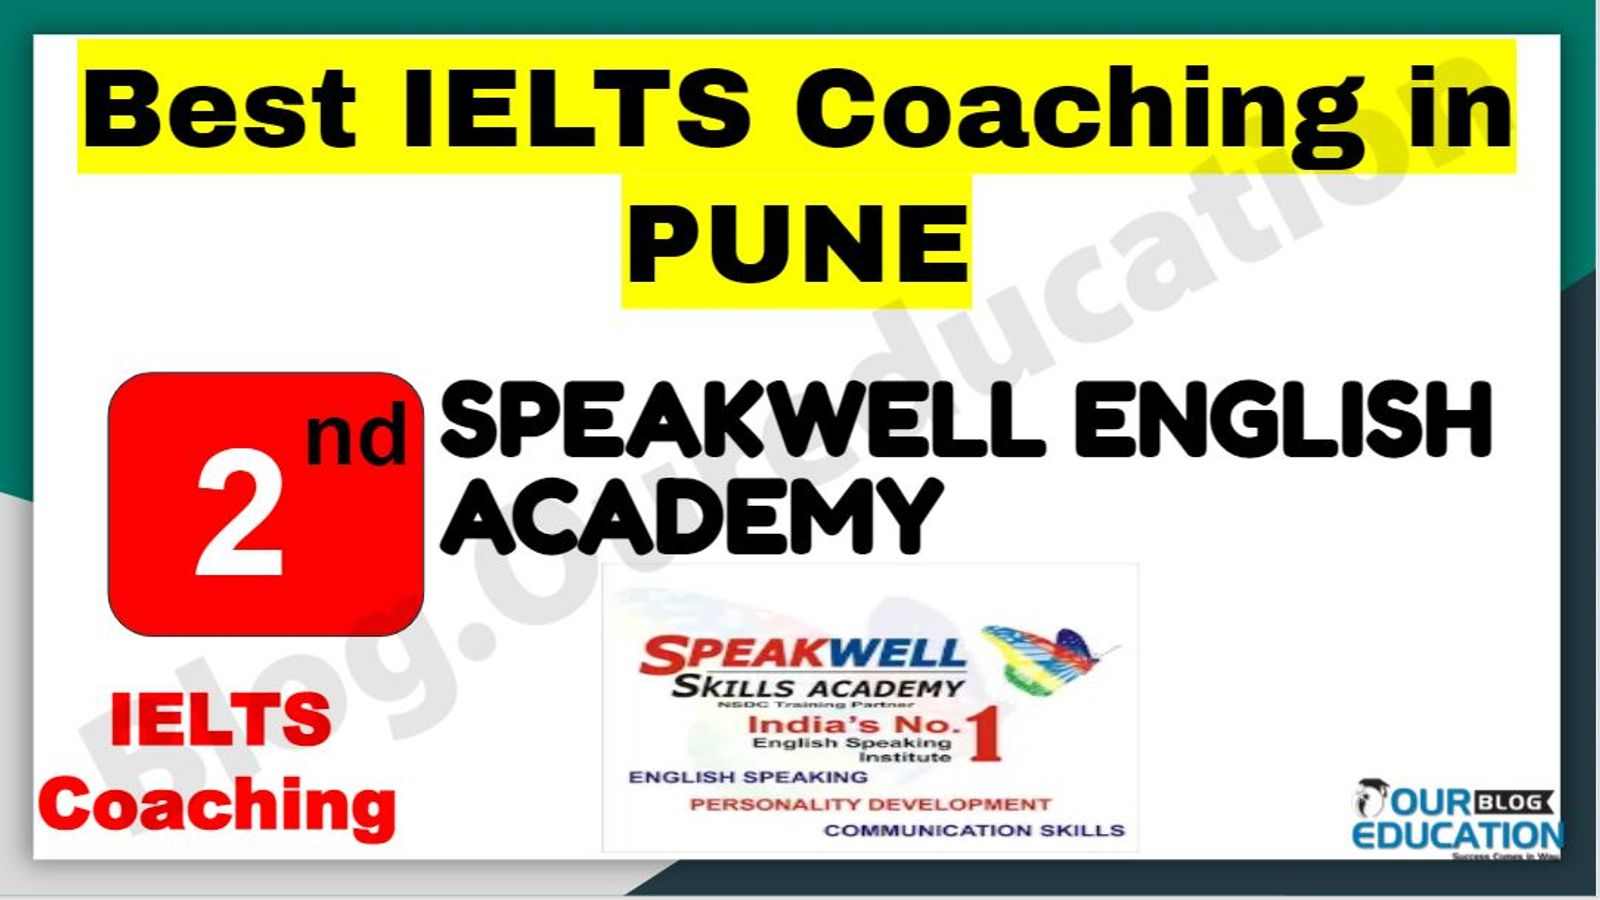 Rank 2 Best IELTS Coaching in Pune